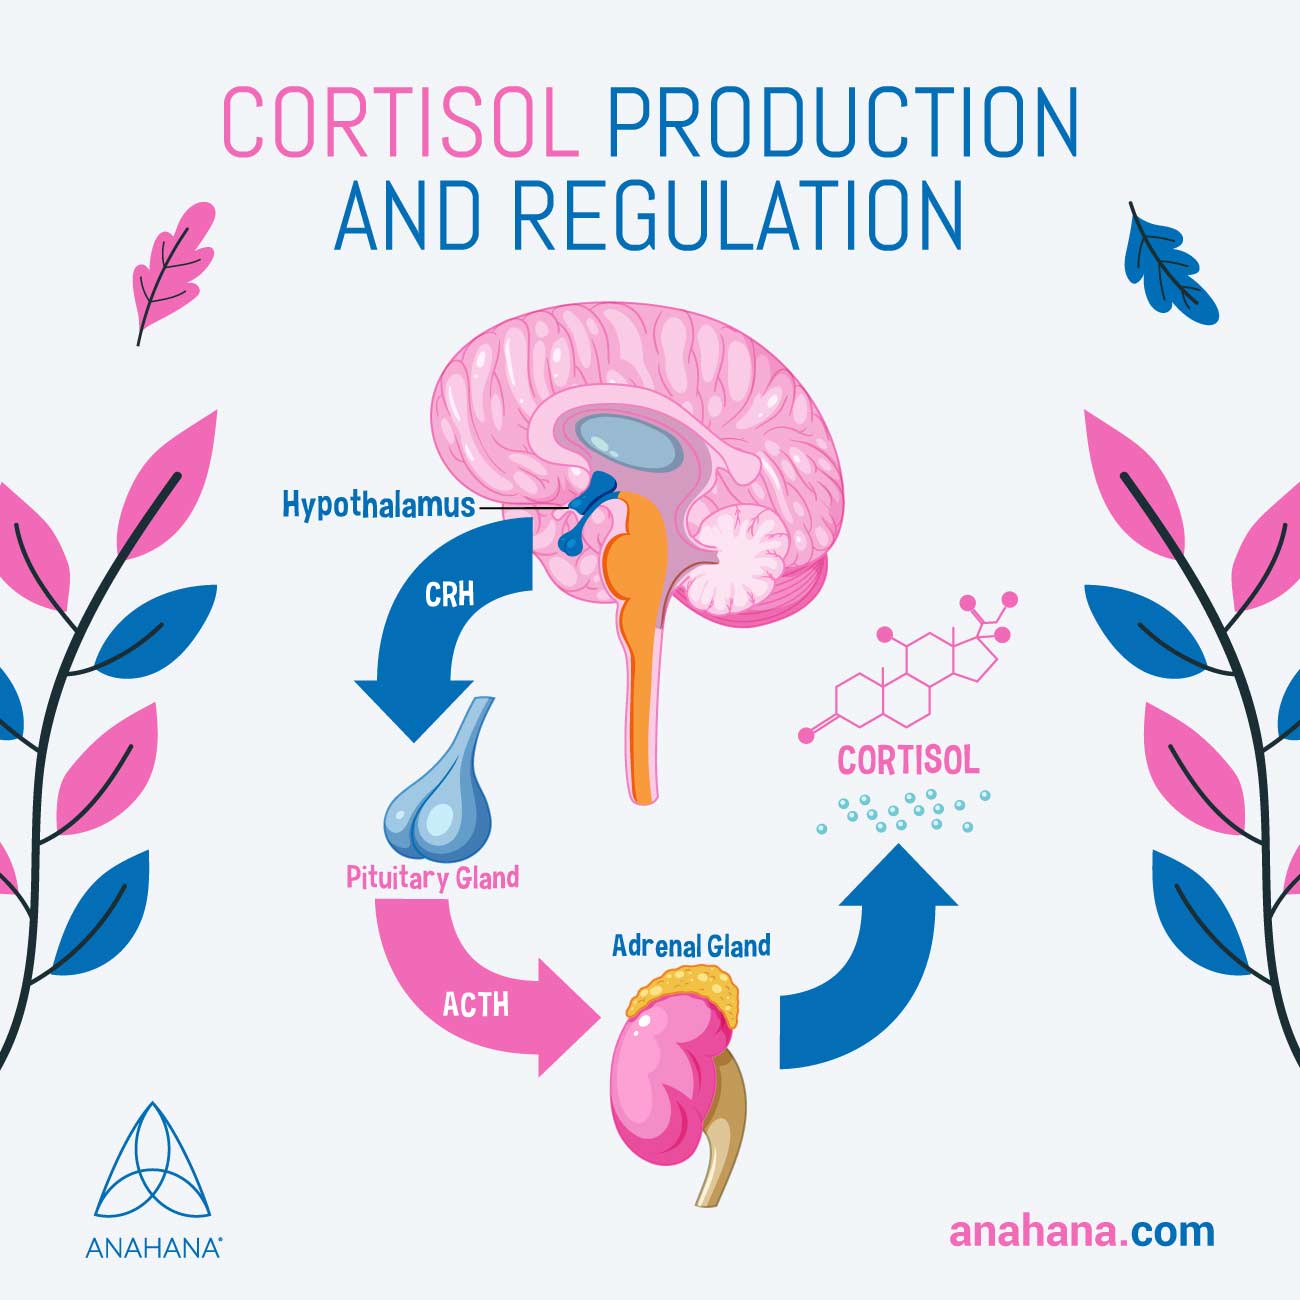 Kortisolproduktion und -regulierung erklärt